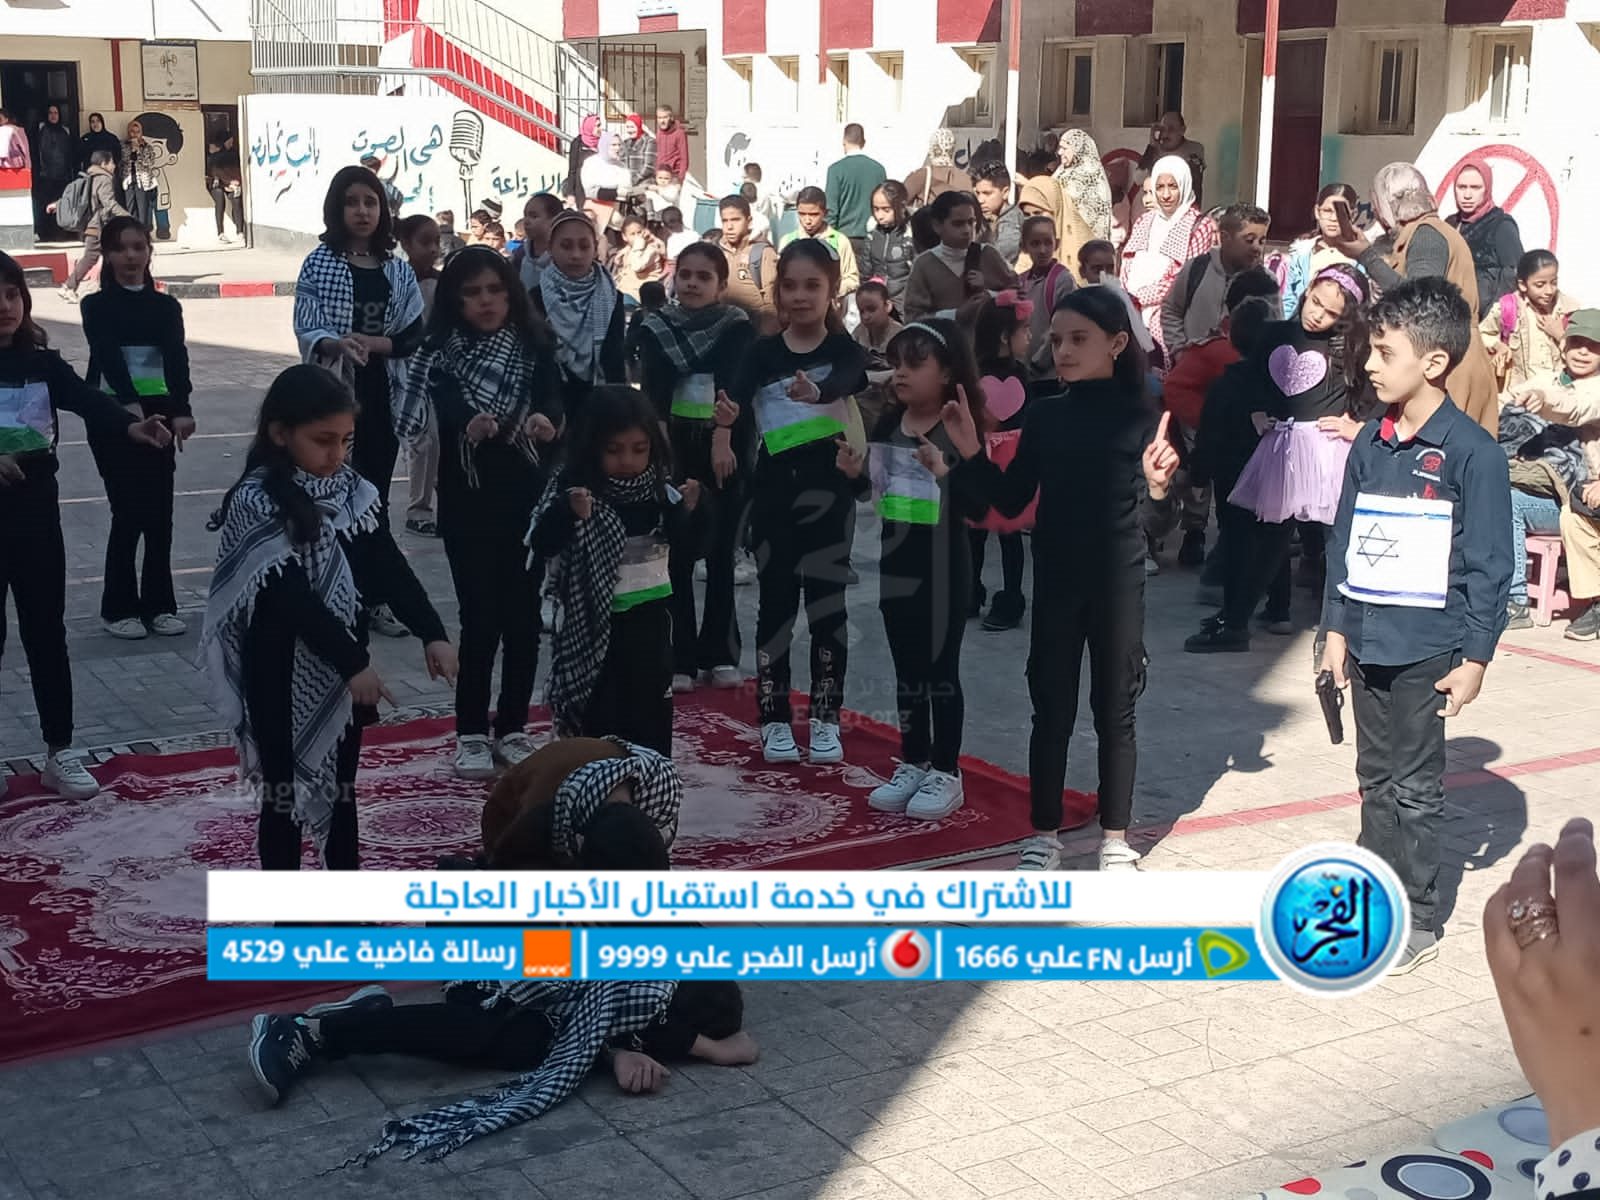 القضية الفلسطينية تسيطر علي احتفالات عيد الطفولة بمدارس البحيرة (صور)
 منذ أقل من 5 دقائق